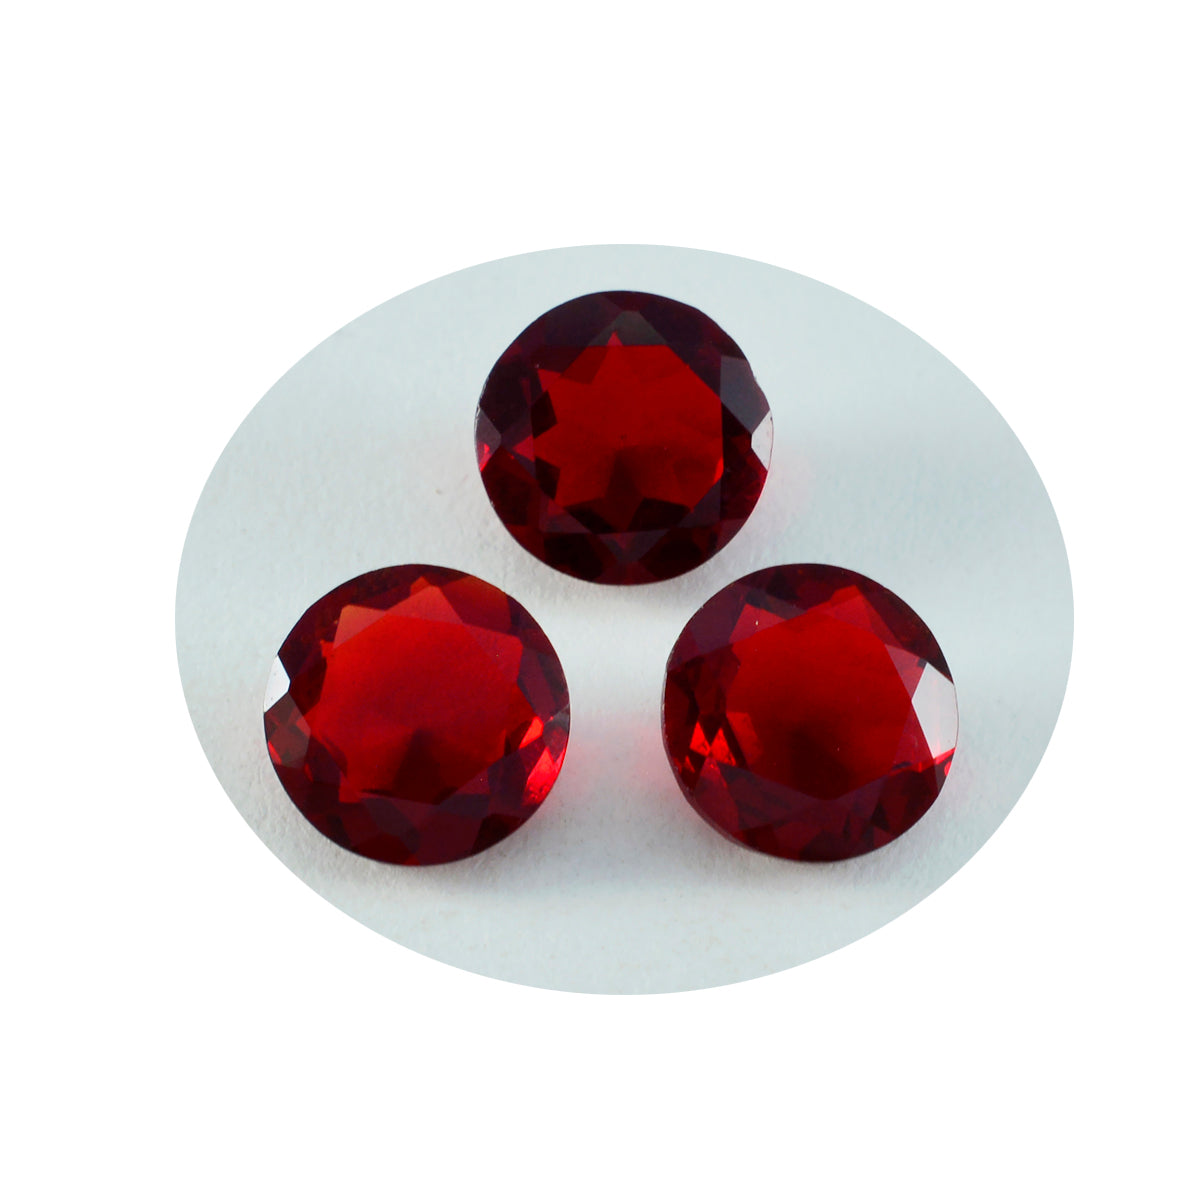 riyogems 1шт красный рубин cz ограненный 13x13 мм круглая форма красивый качественный драгоценный камень